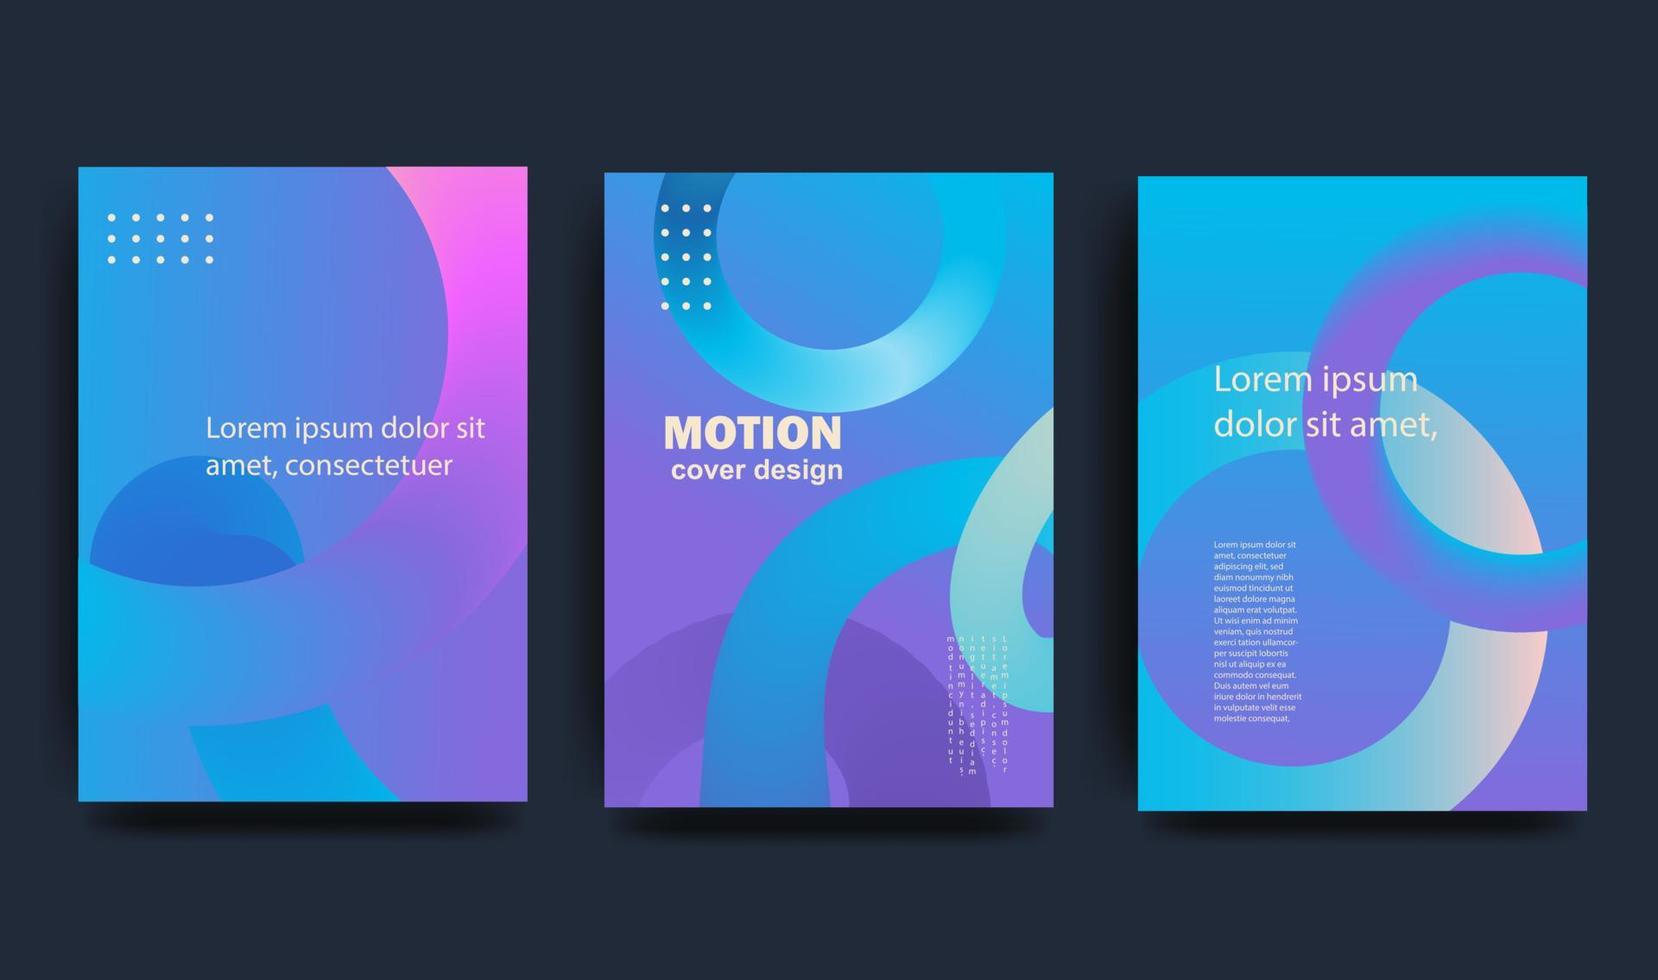 kreativ omslag i modern minimalistisk stil för företags- identitet, varumärke, social media reklam, kampanj. vågig form på en blå bakgrund. vektor illustration